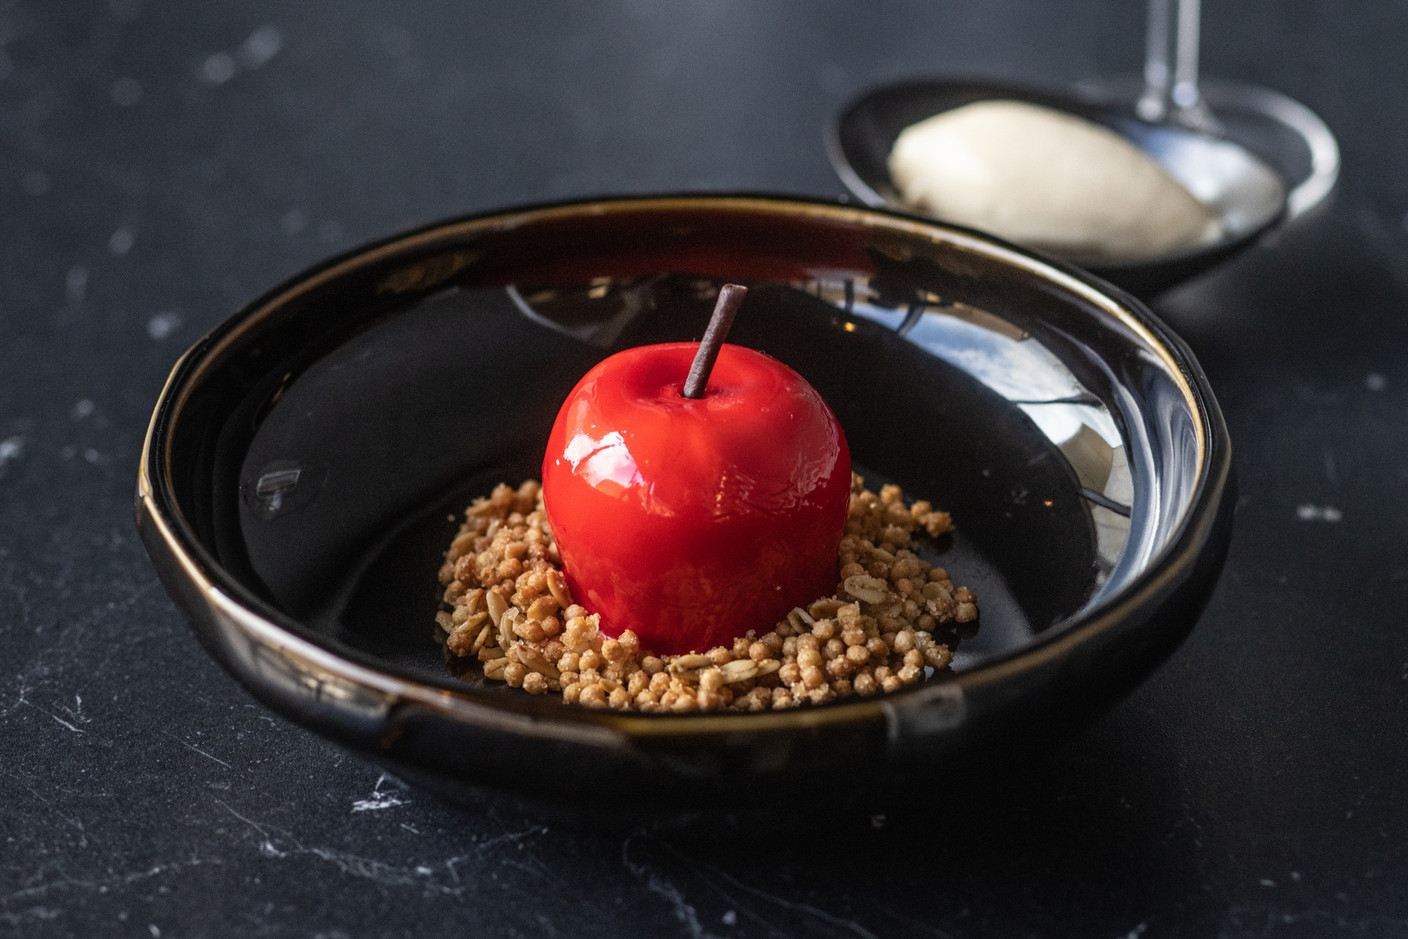 The Apple, un dessert… à base de pomme qui revisite le crumble (ce plat n’a pas été testé).  (Photo: Guy Wolff/Maison Moderne)